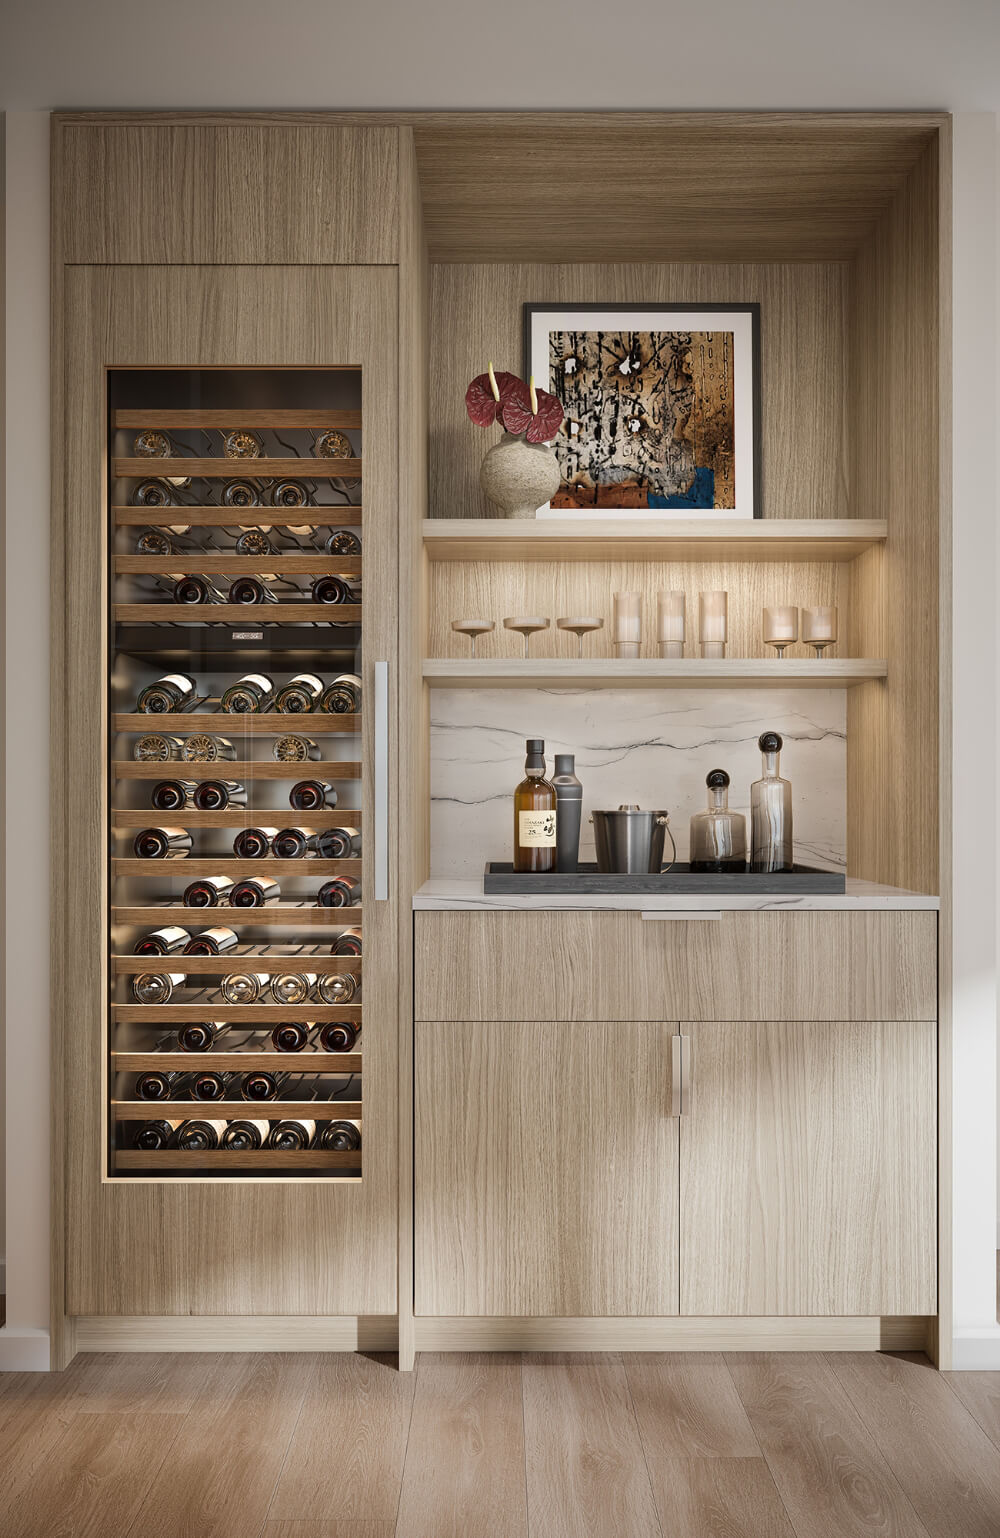 Render of kitchen wine cabinet